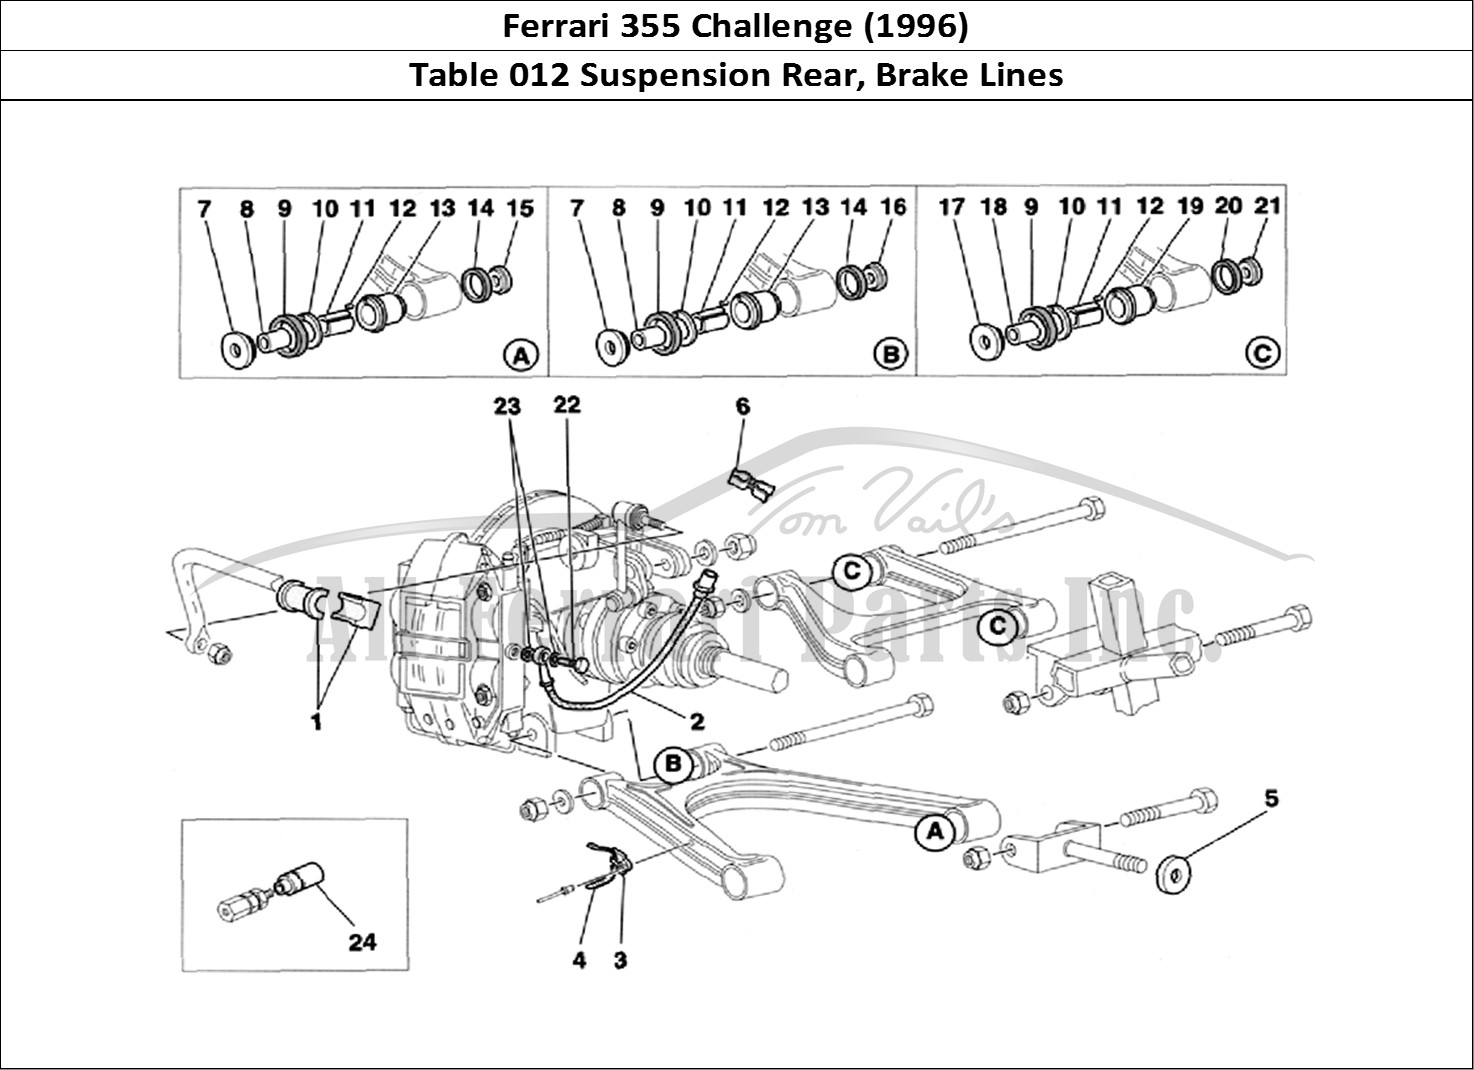 Ferrari Parts Ferrari 355 Challenge (1996) Page 012 Rear Suspension and Brake